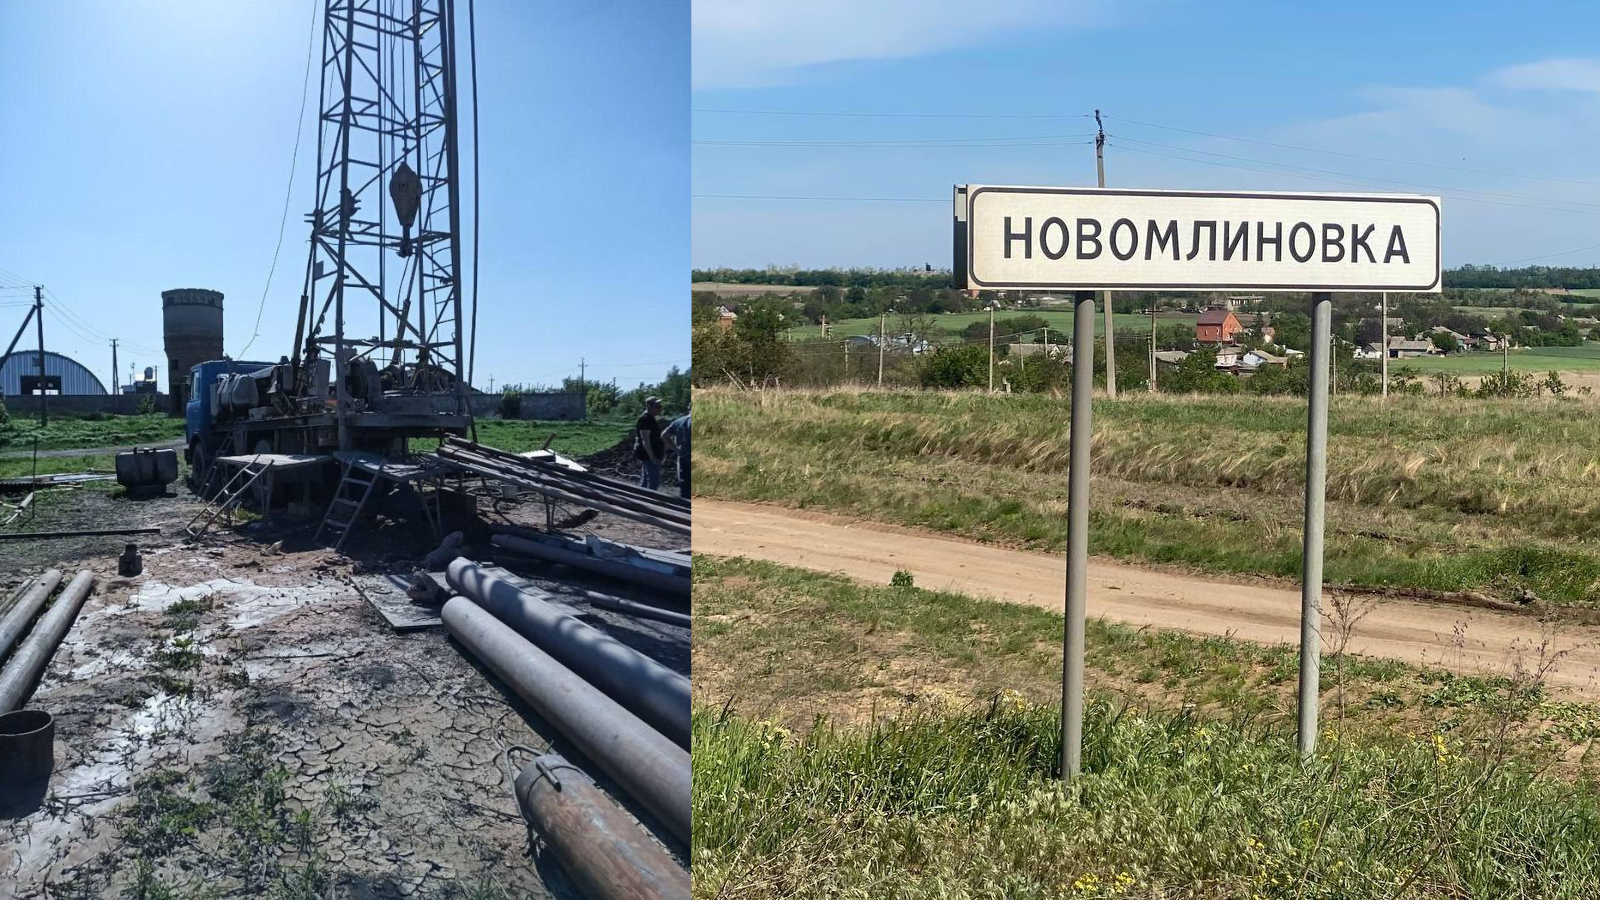 Кремлёвские паблики говорят, что благодаря Марий Эл в Новомлиновке скоро будет питьевая вода